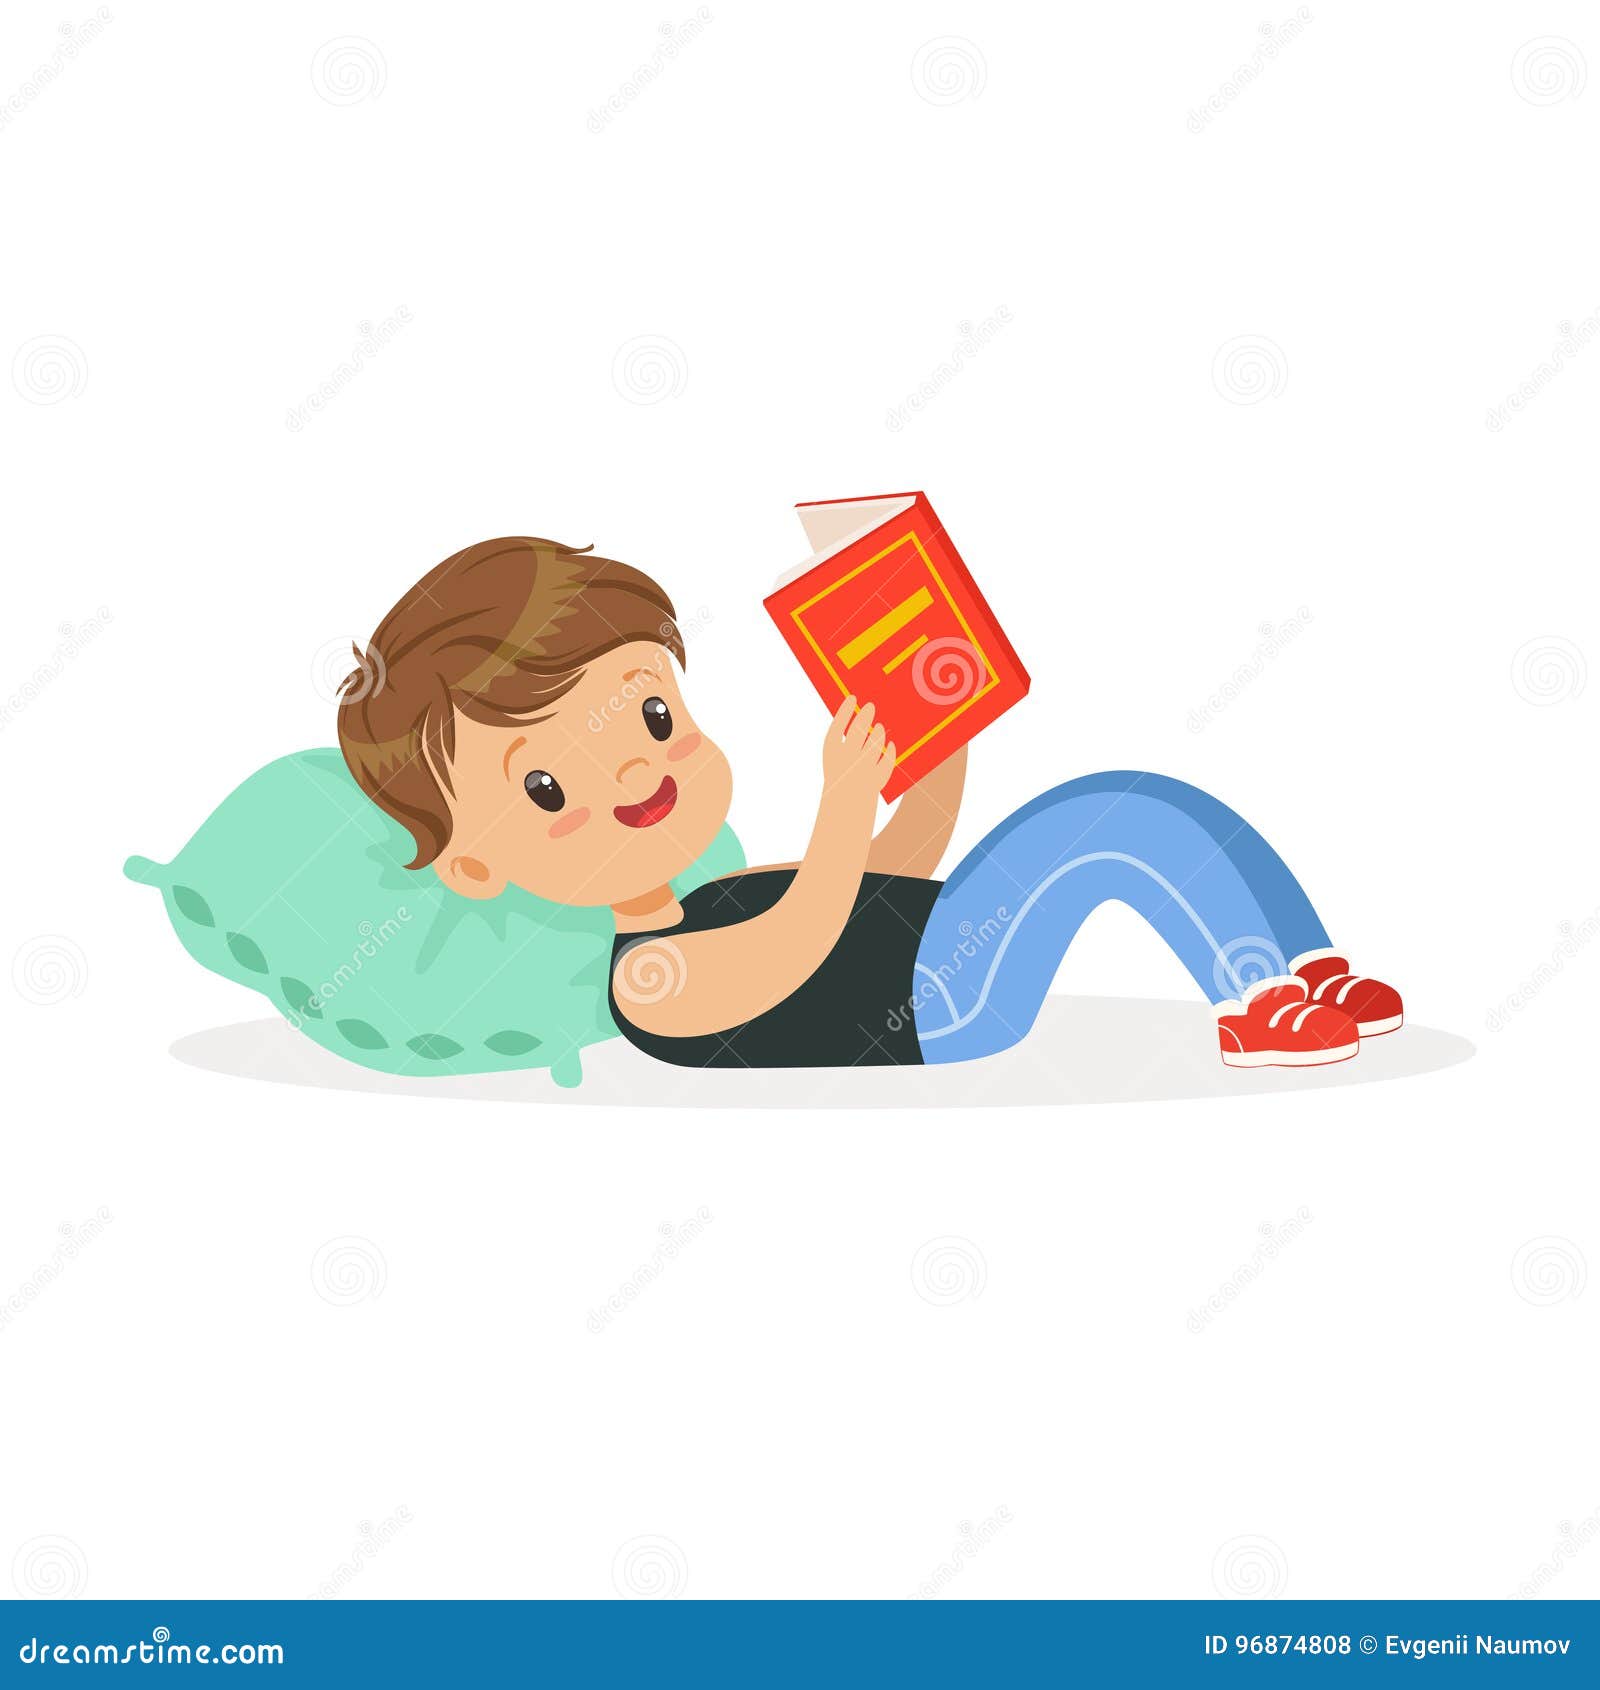 Читать лежа вредно лежа на горячем песке. Чтение лёжа ребёнок. Мальчик лежит. Чтение лежа картина для детей. Мальчик лежит с книжкой.